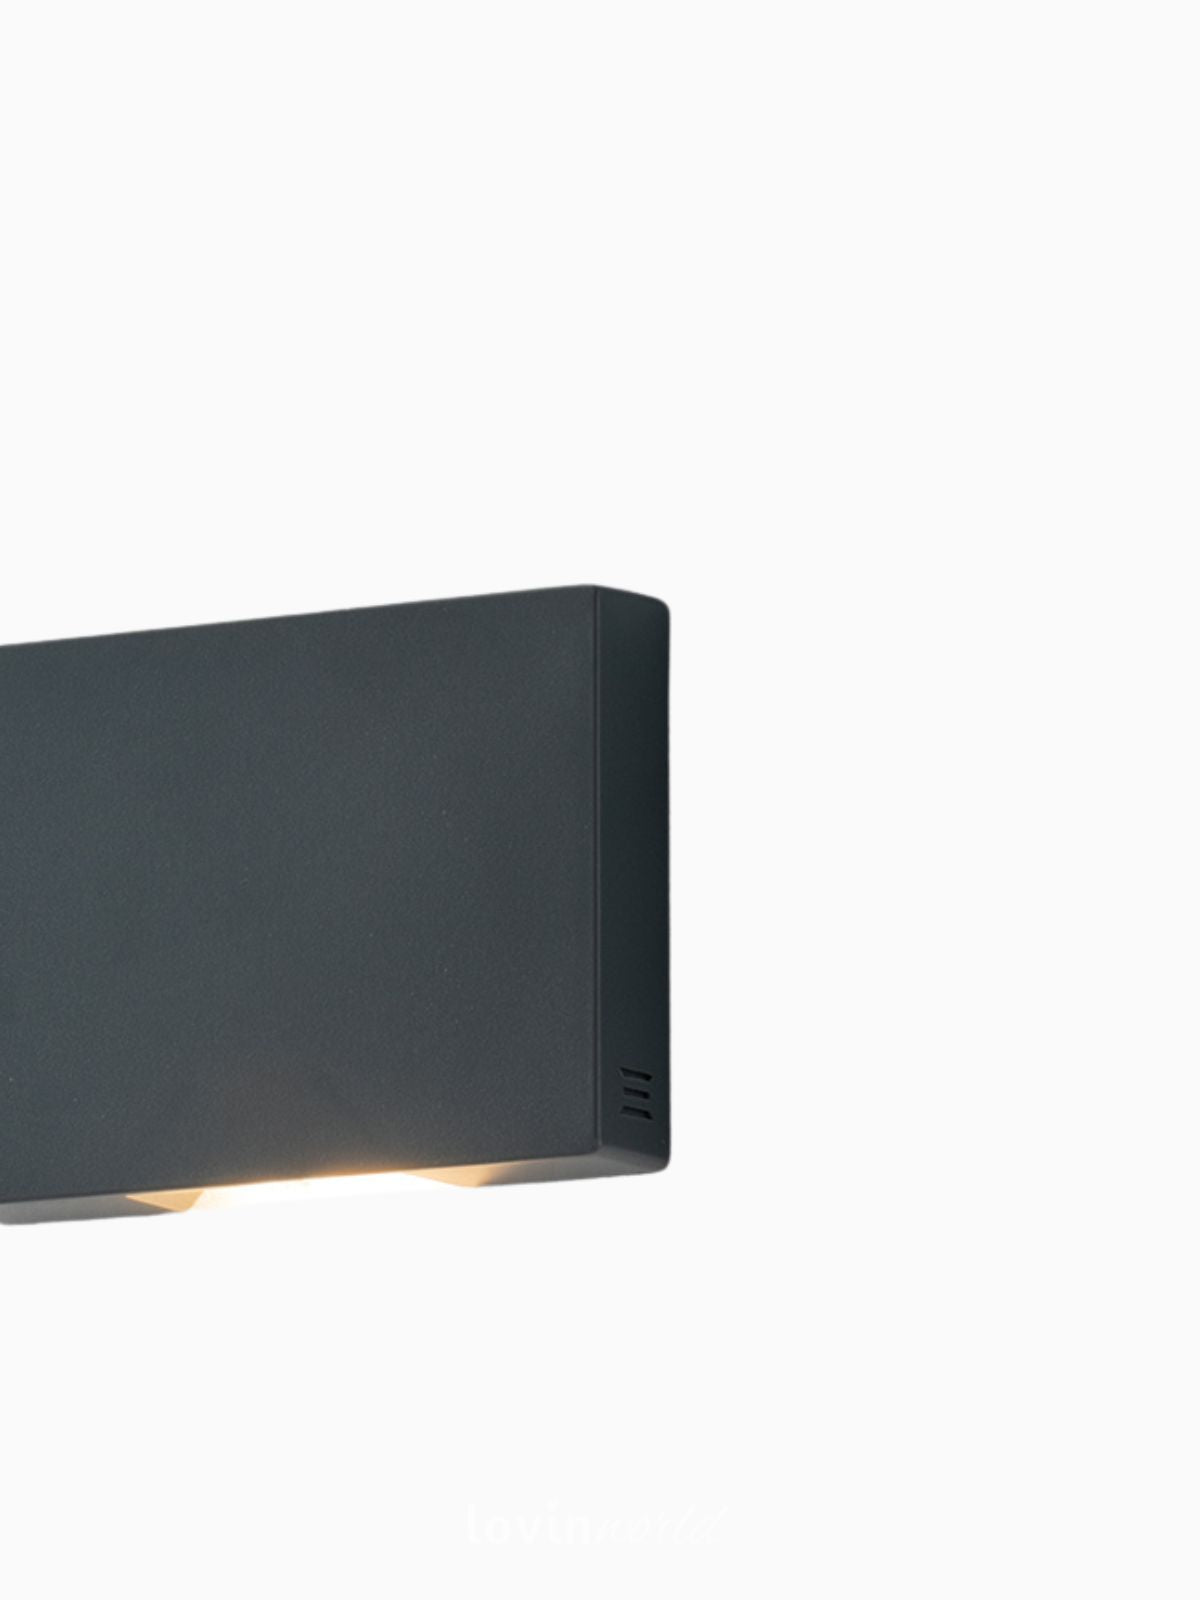 Segnapassi da esterno LED Steplight in termoplastica, colore nero-4